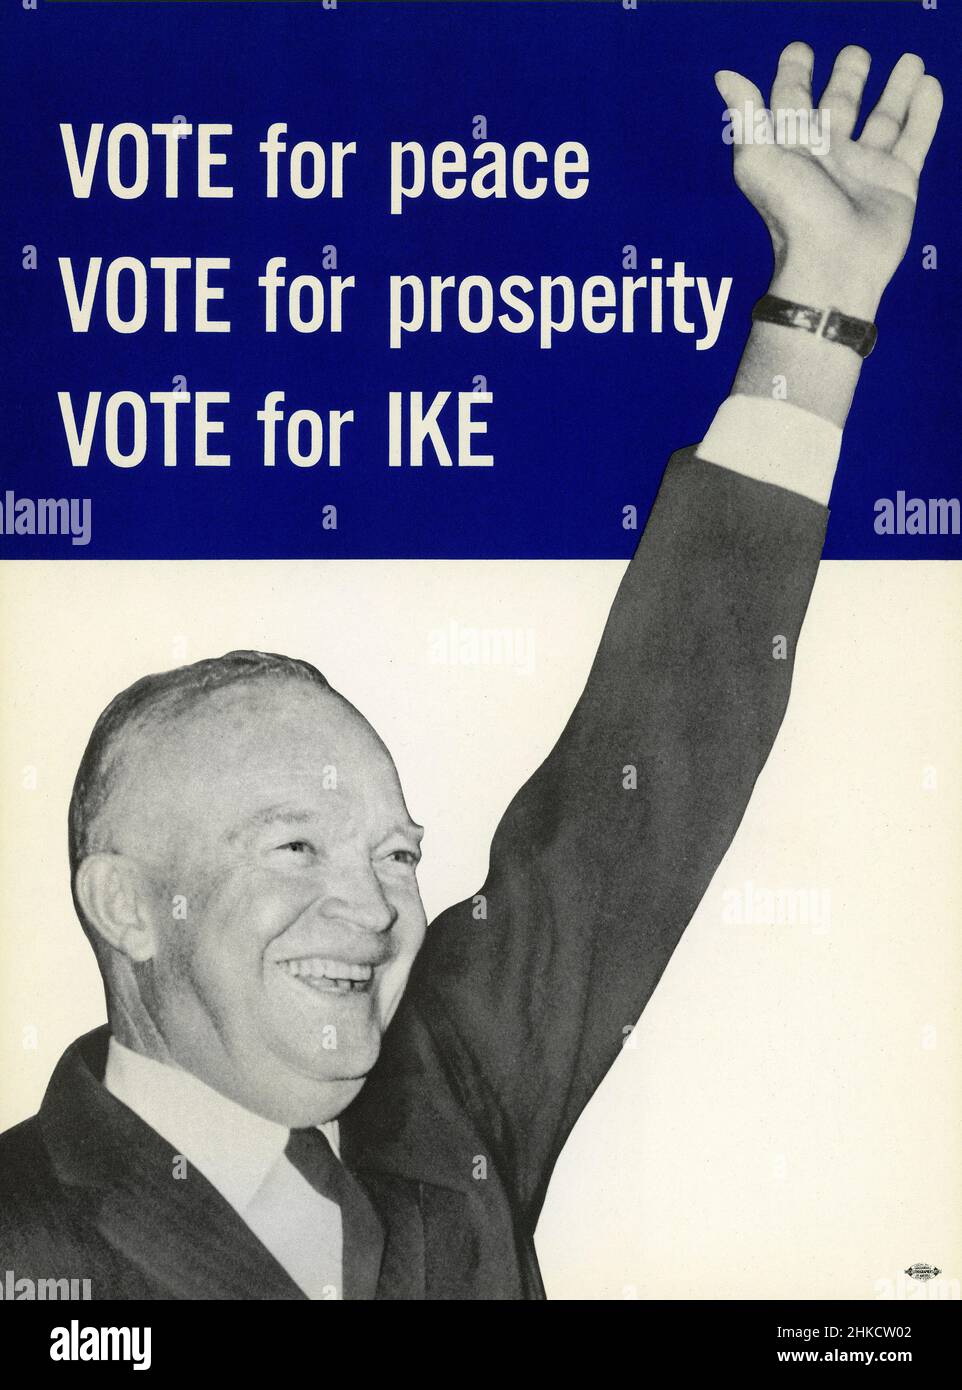 Affiche politique pour Dwight D. Eisenhower pendant la campagne électorale présidentielle américaine, artiste non identifié, 1952 Banque D'Images